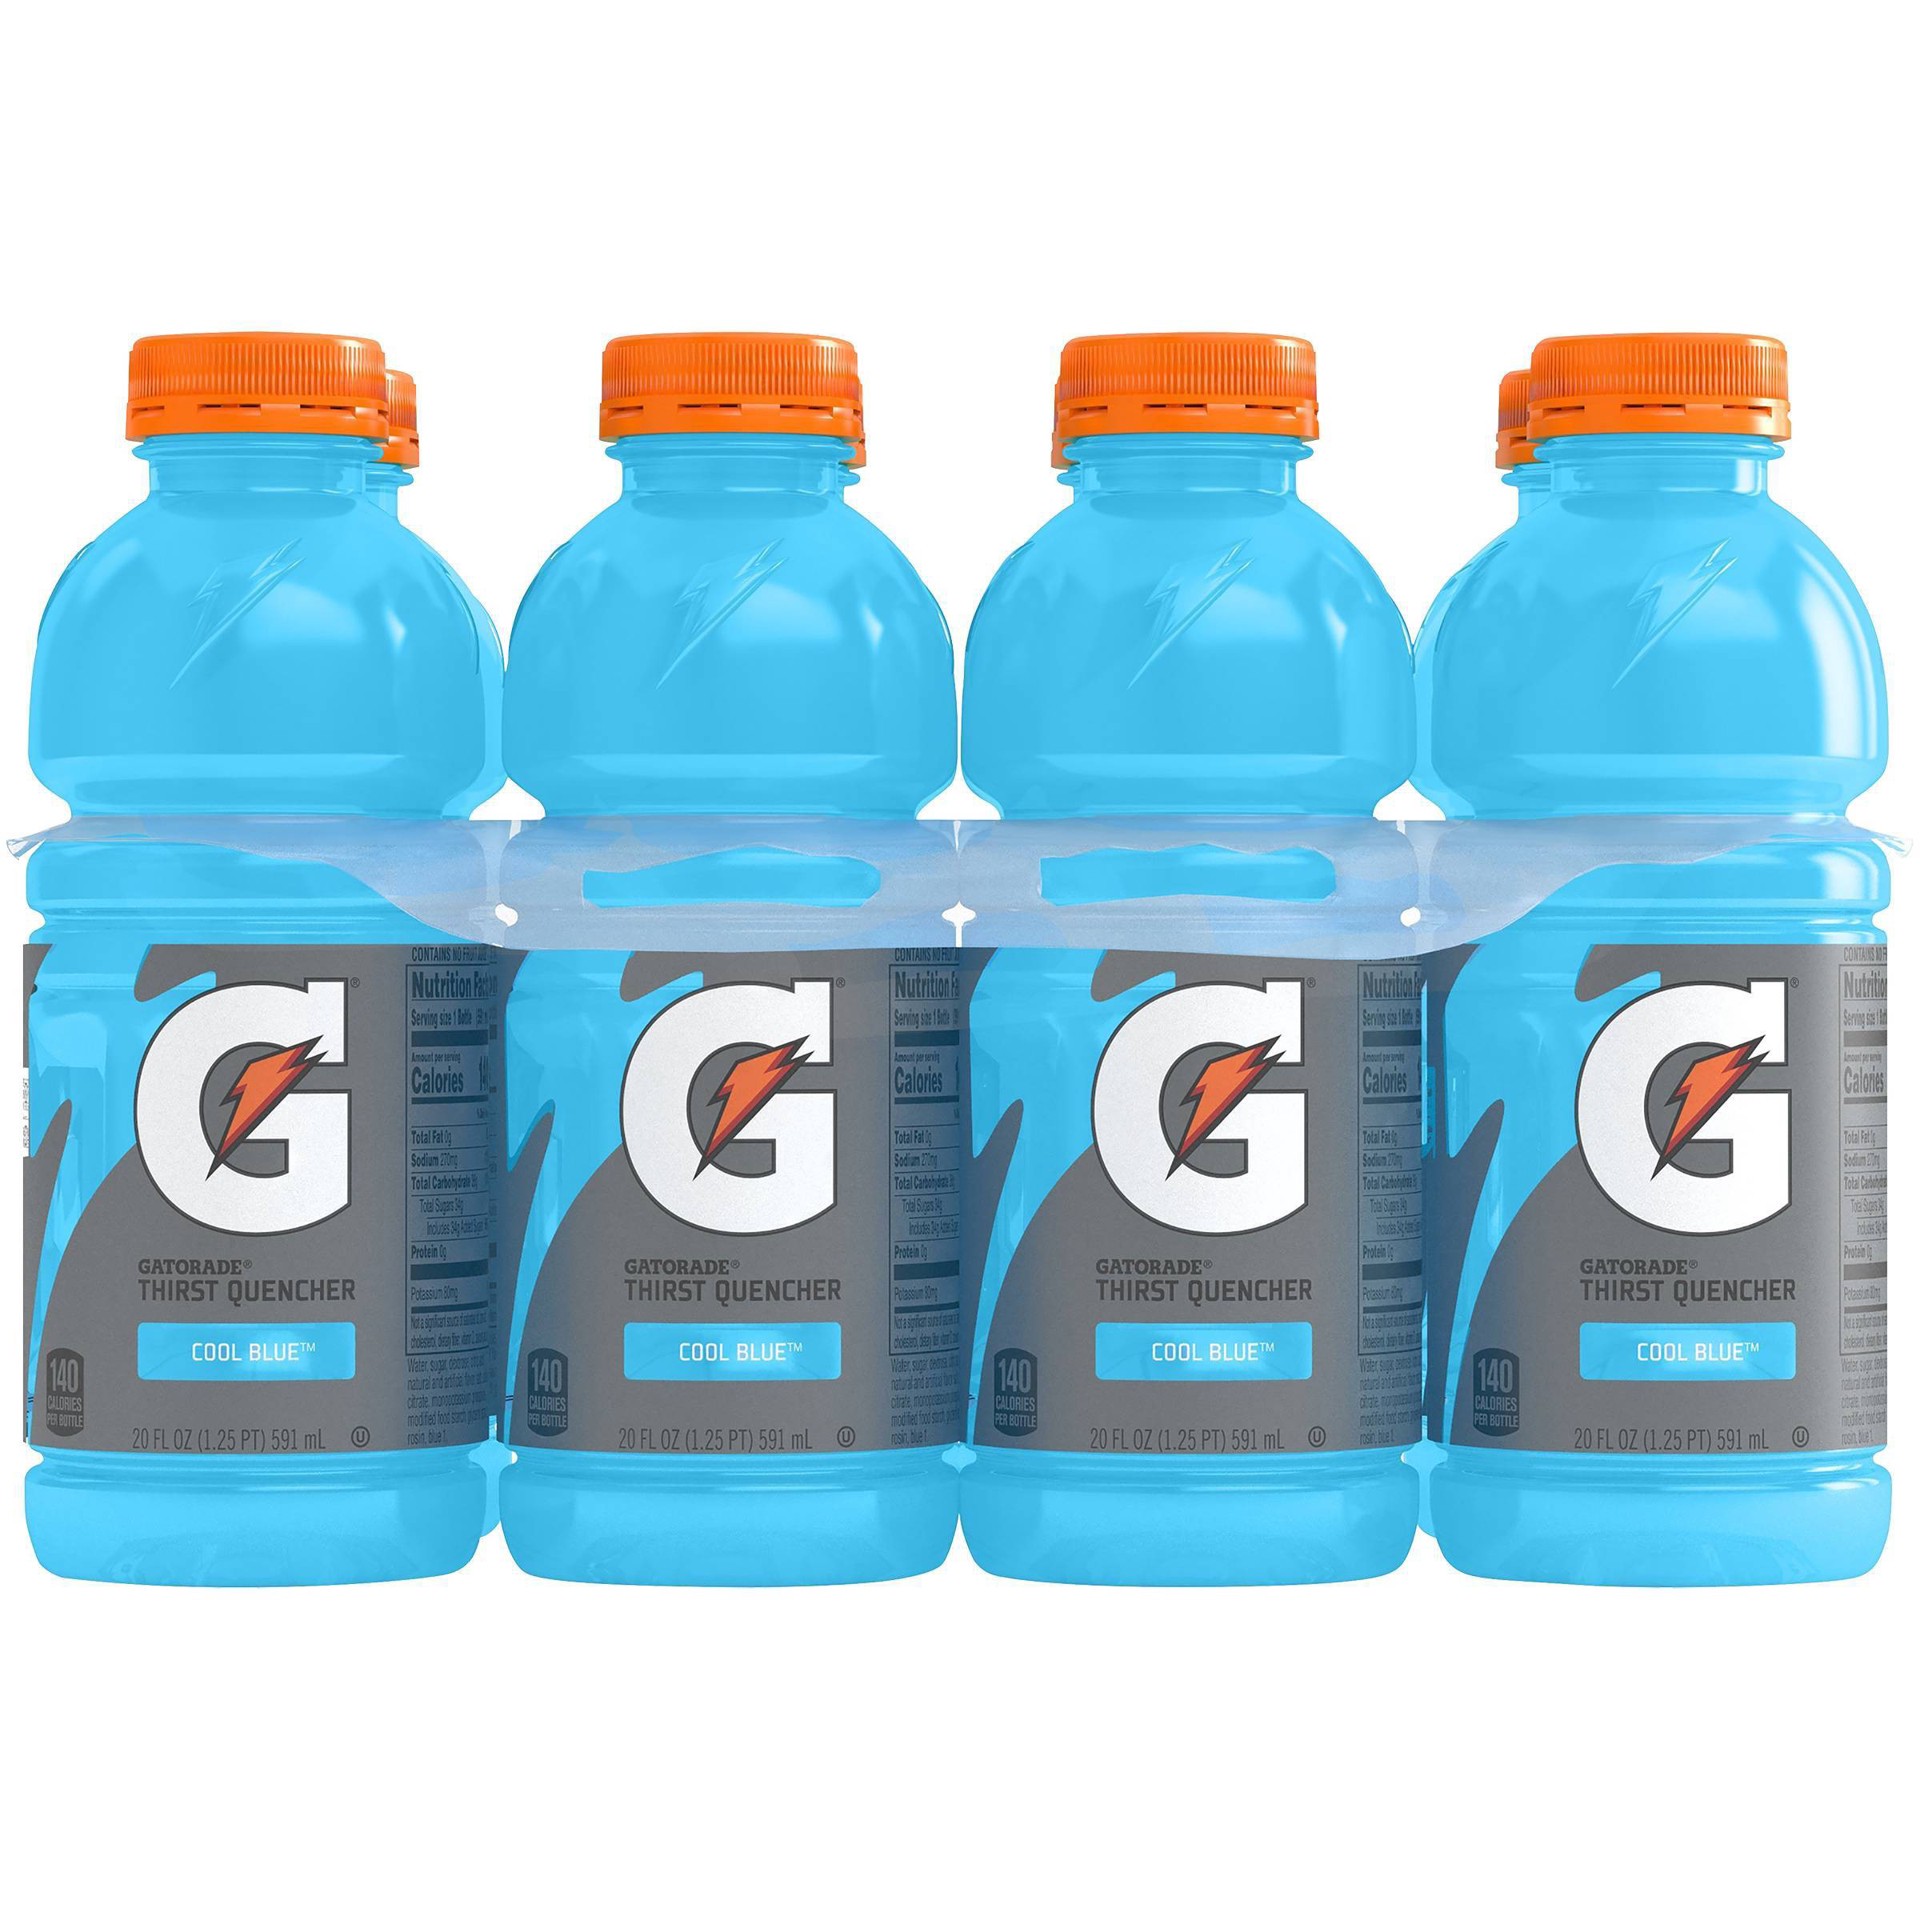 slide 1 of 1, Gatorade Cool Blue Sports Drink Bottles, 8 ct; 20 fl oz